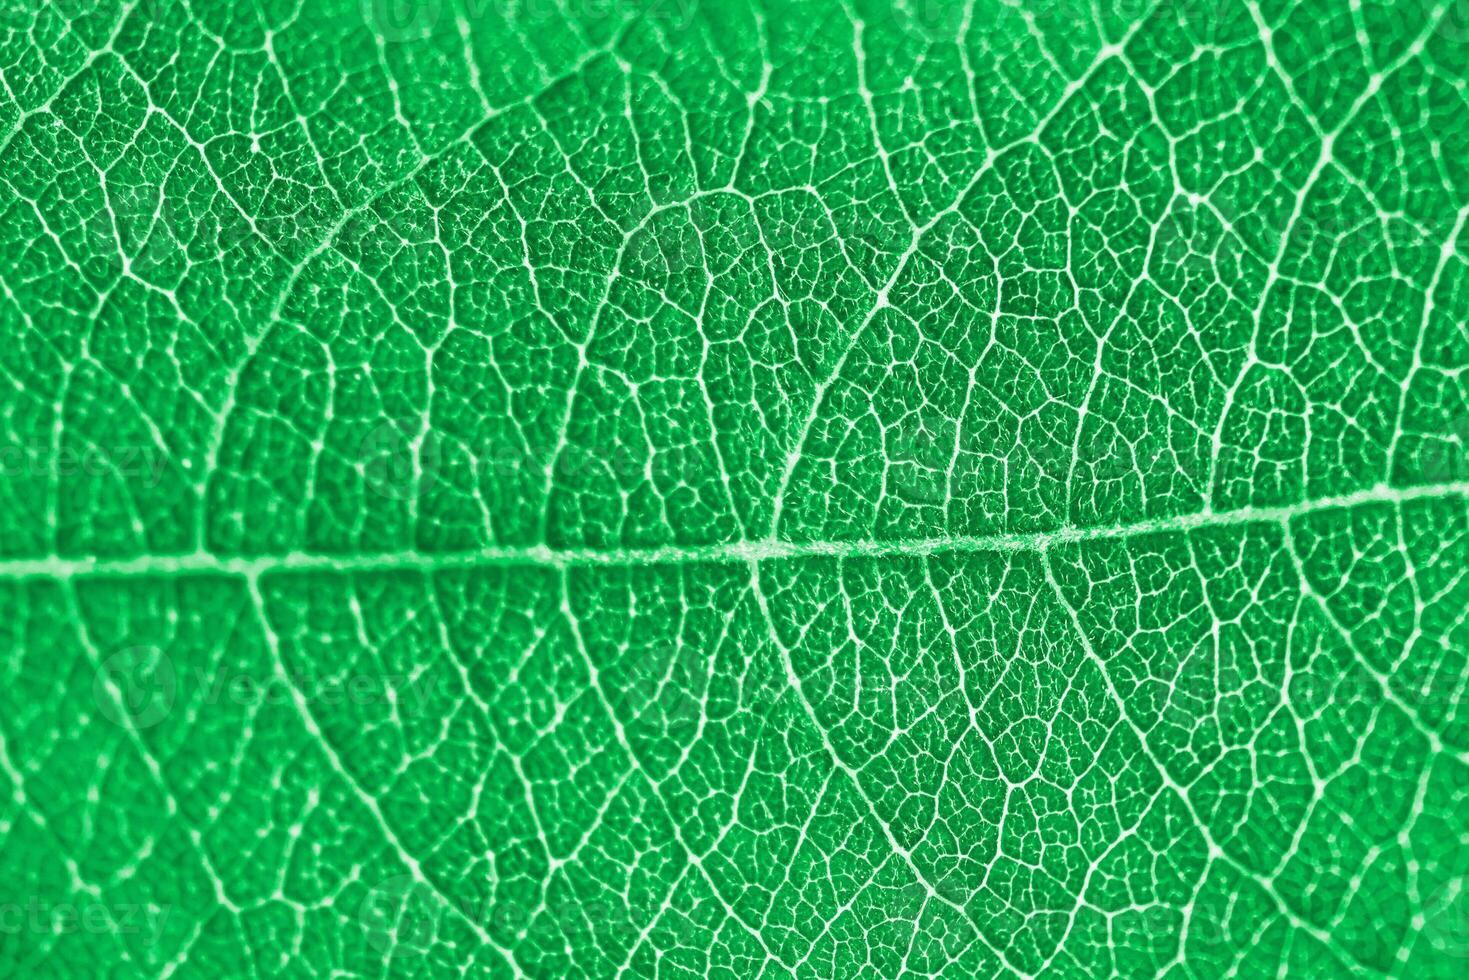 textura de folha verde macro com belo relevo da planta, close-up foto macro de natureza pura